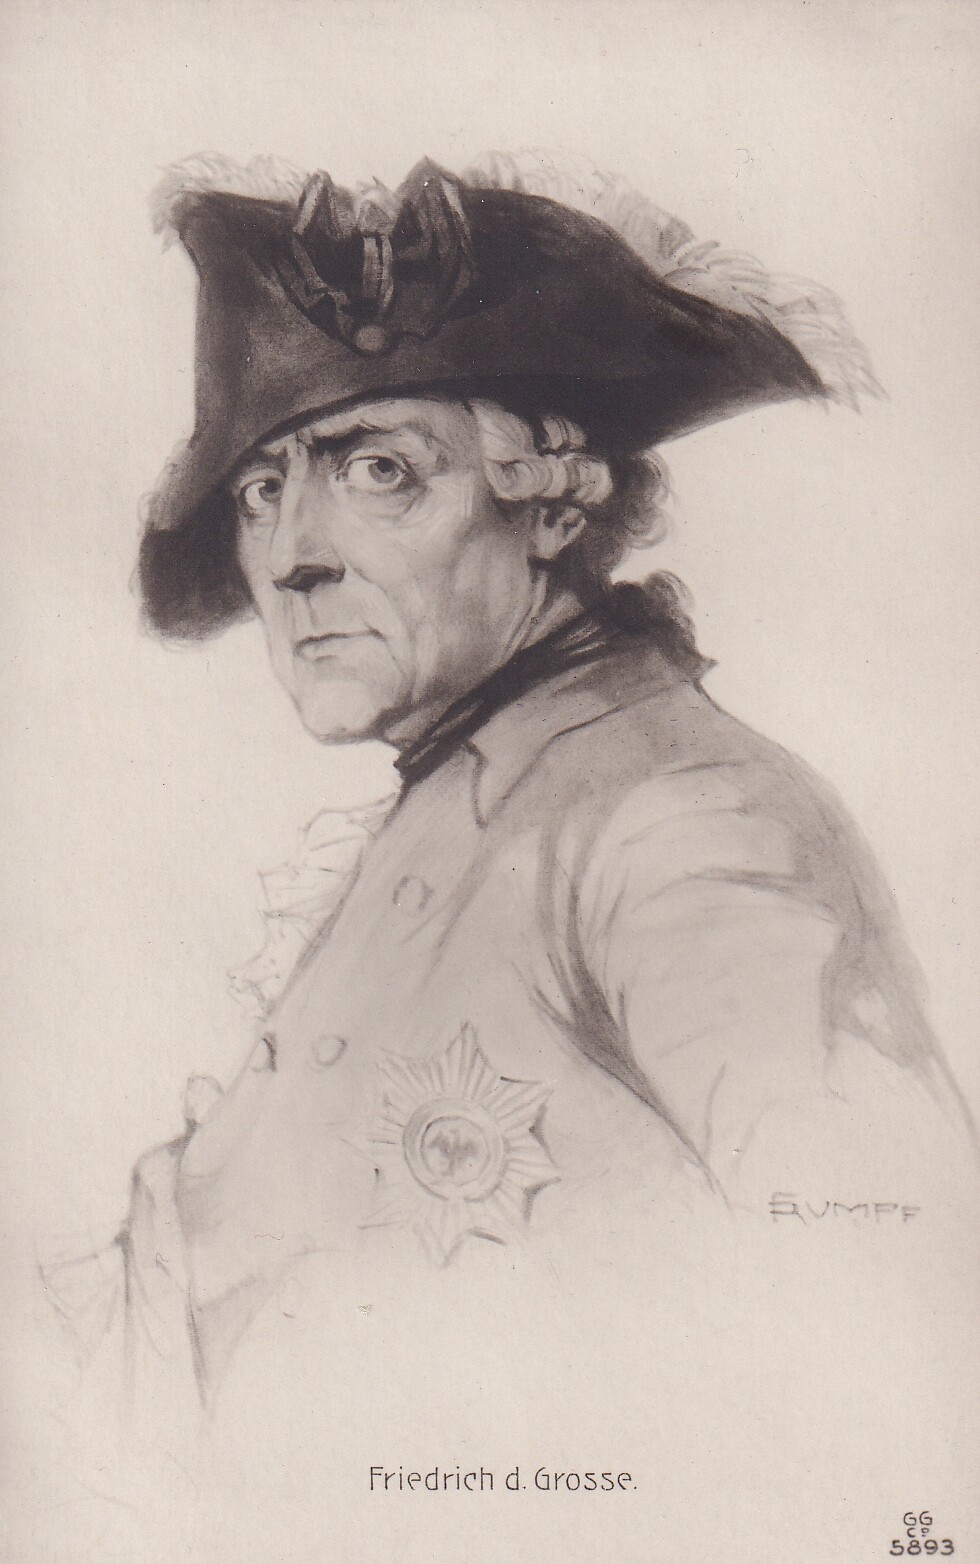 Bildpostkarte mit Reproduktion eines grafischen Porträts König Friedrichs II. von Preußen (1712-1786) von Fritz Rumpf (1888-1949), um 1920 (Schloß Wernigerode GmbH RR-F)